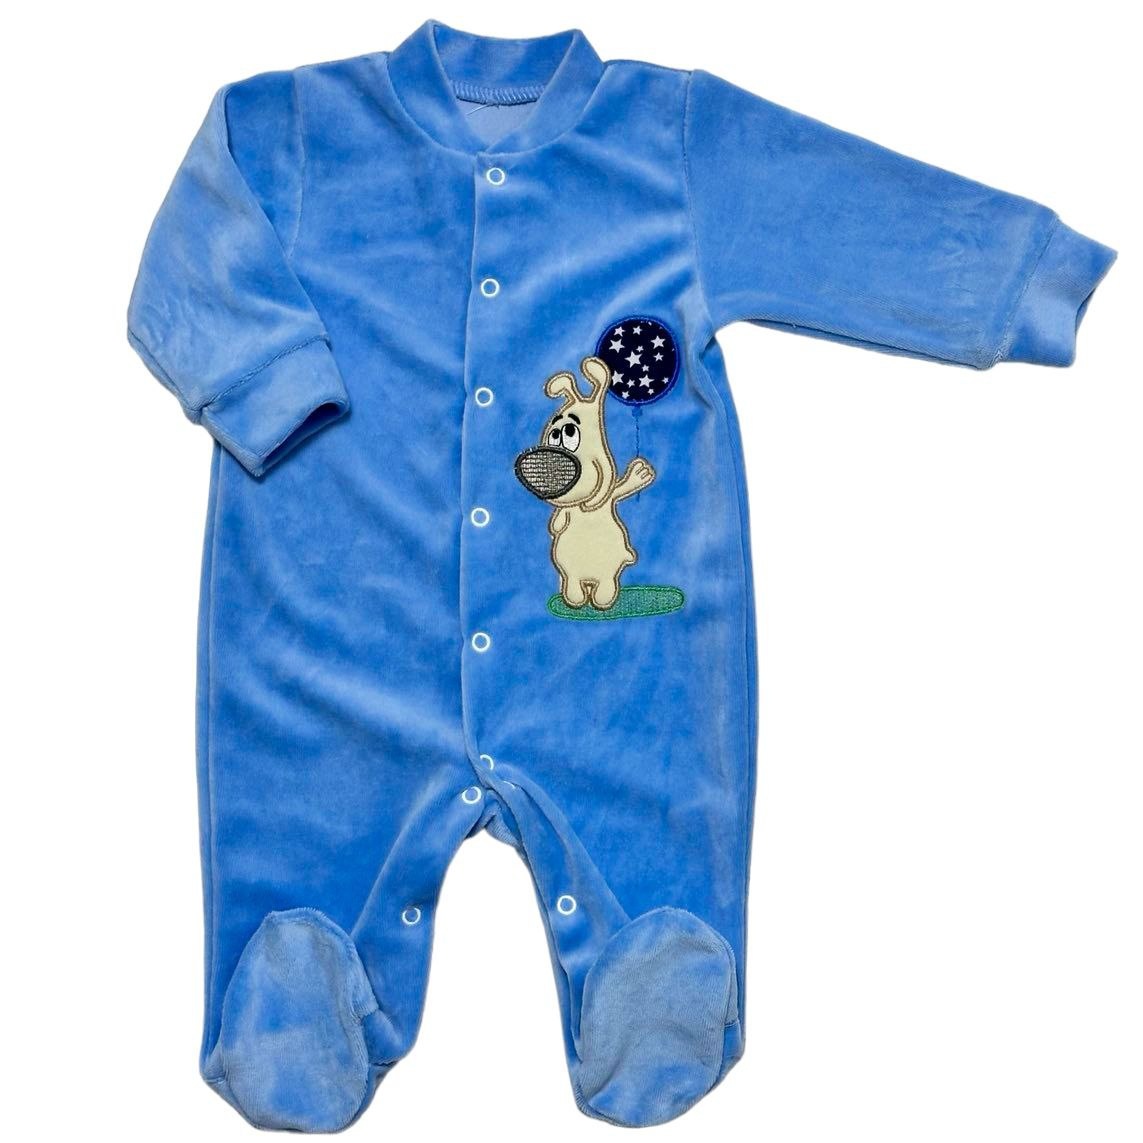 Комбинезон «ЧИЖИК» голубого цвета с вышивкой велюр, Голубой, 9-12 месяцев, 80см